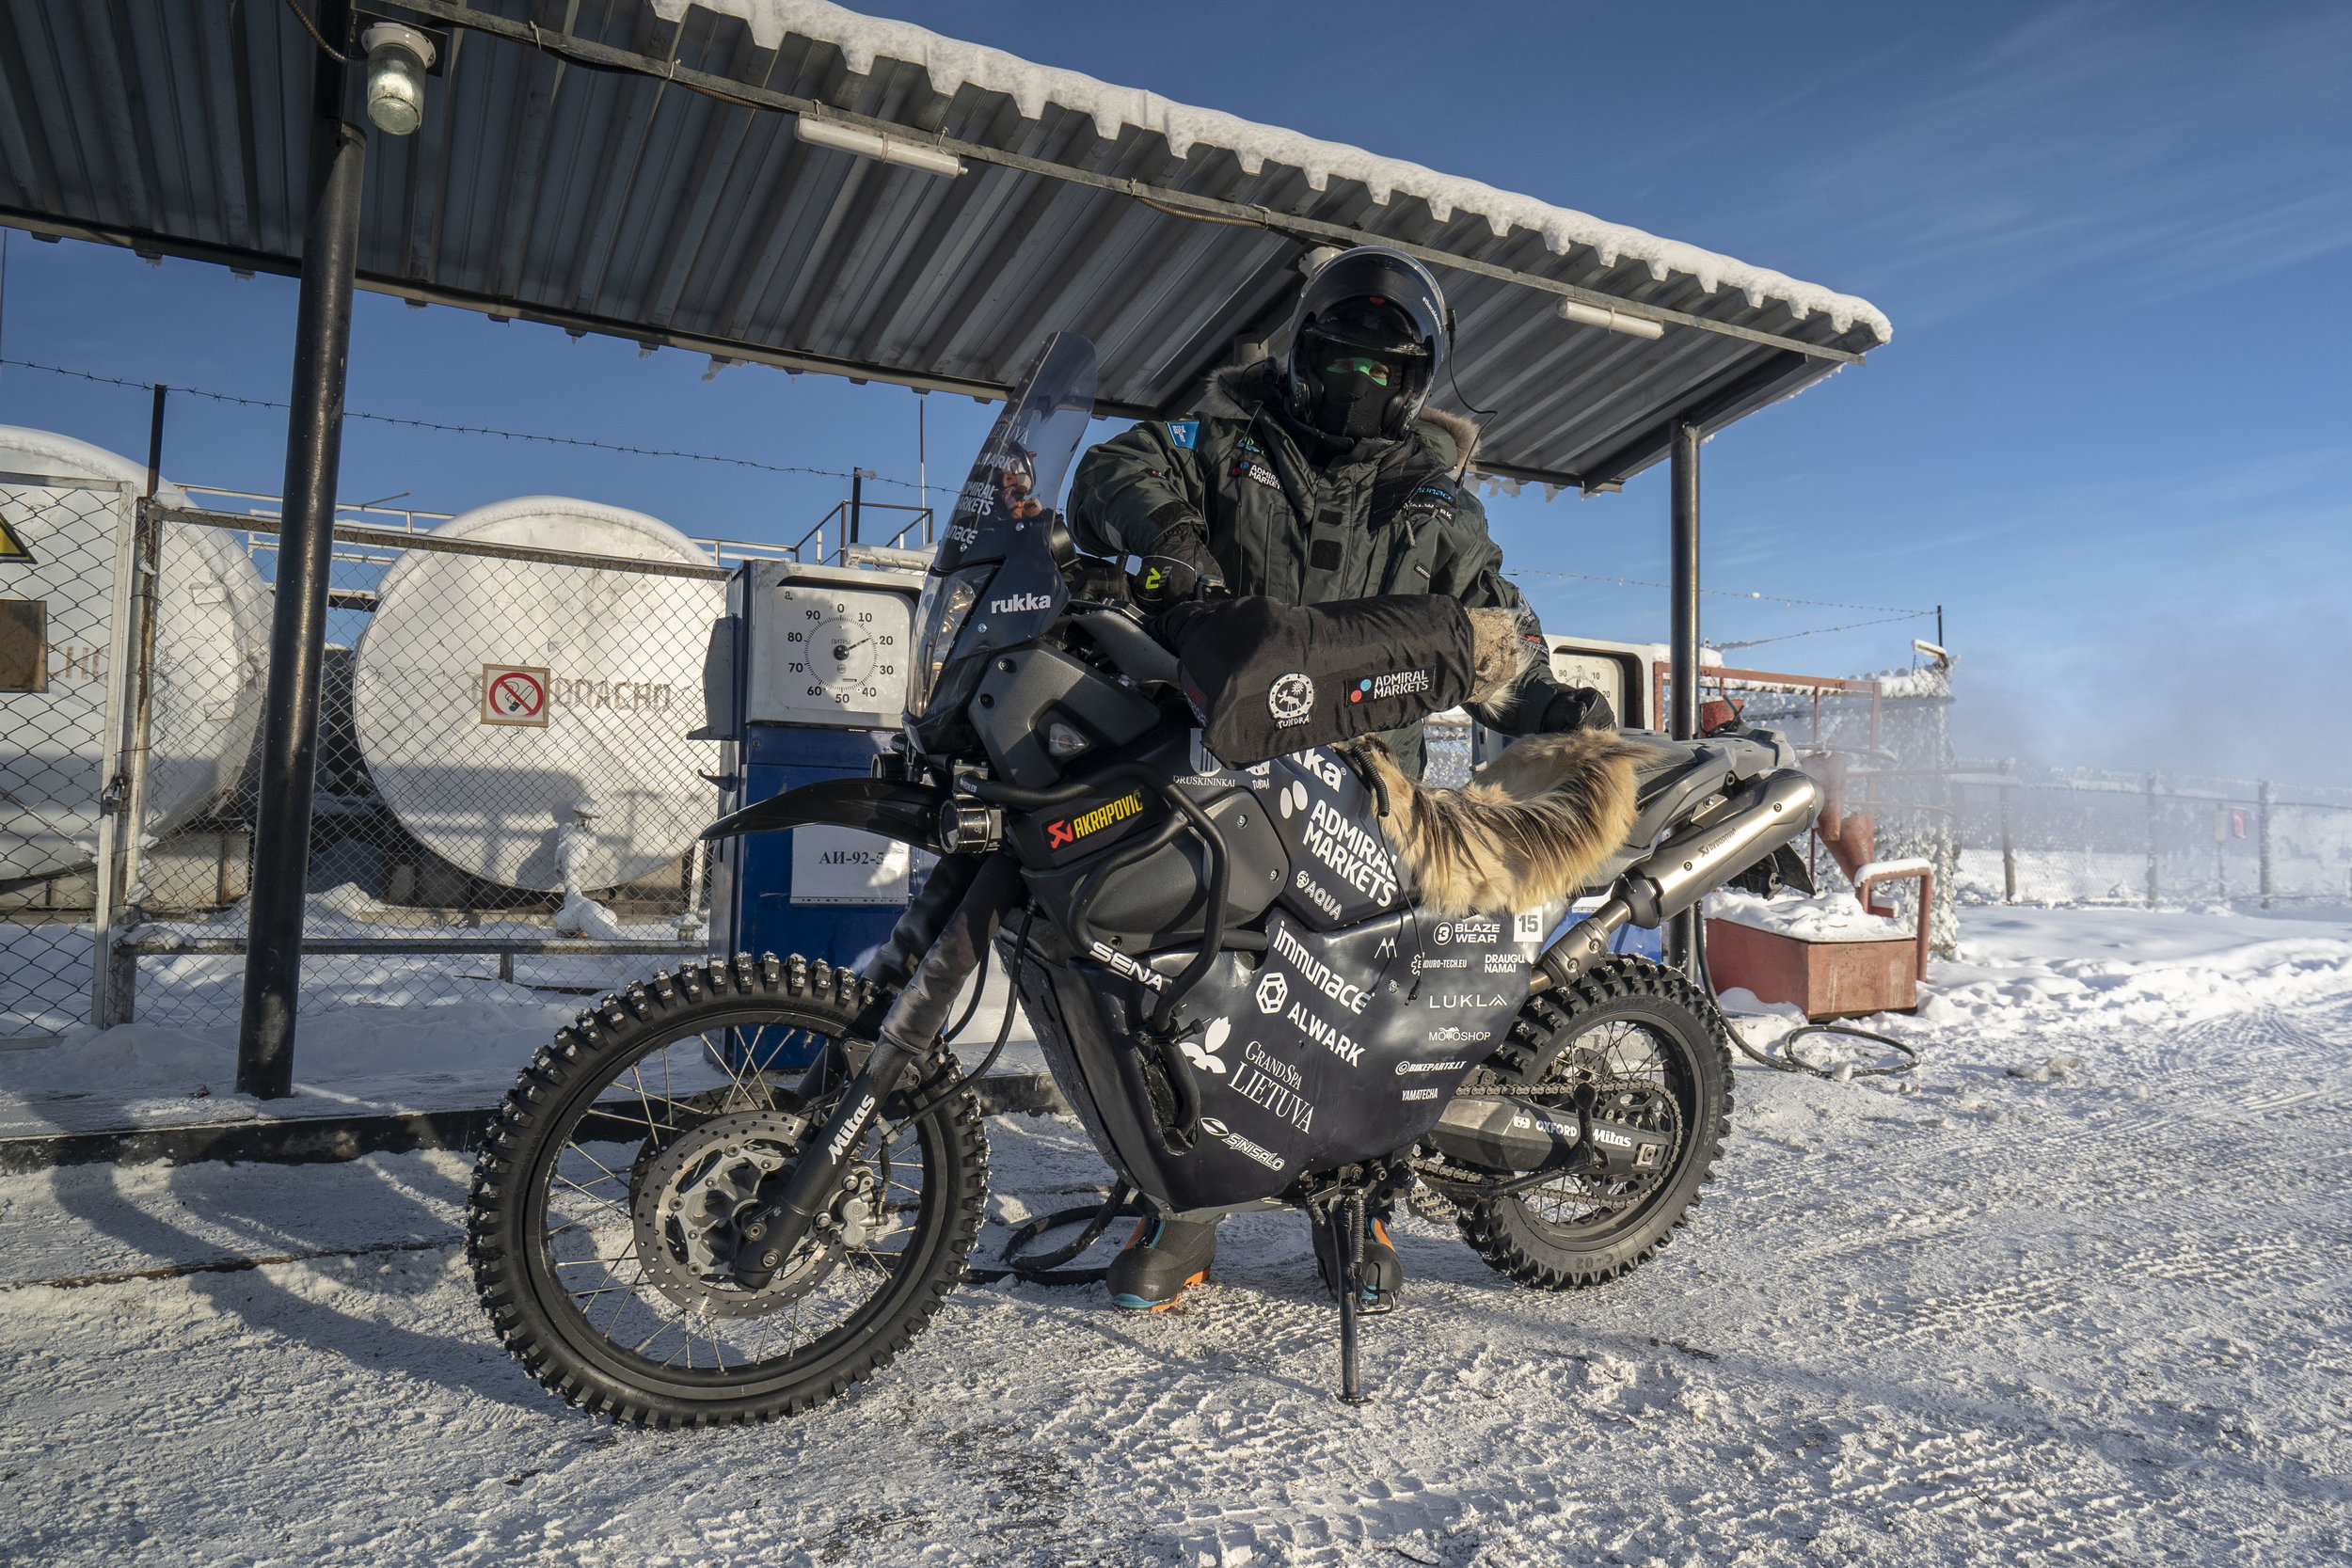 Karolis-Mieliauskas-coldest-ride-adventure-rider-radio-motorcycle-podcast-17.jpg